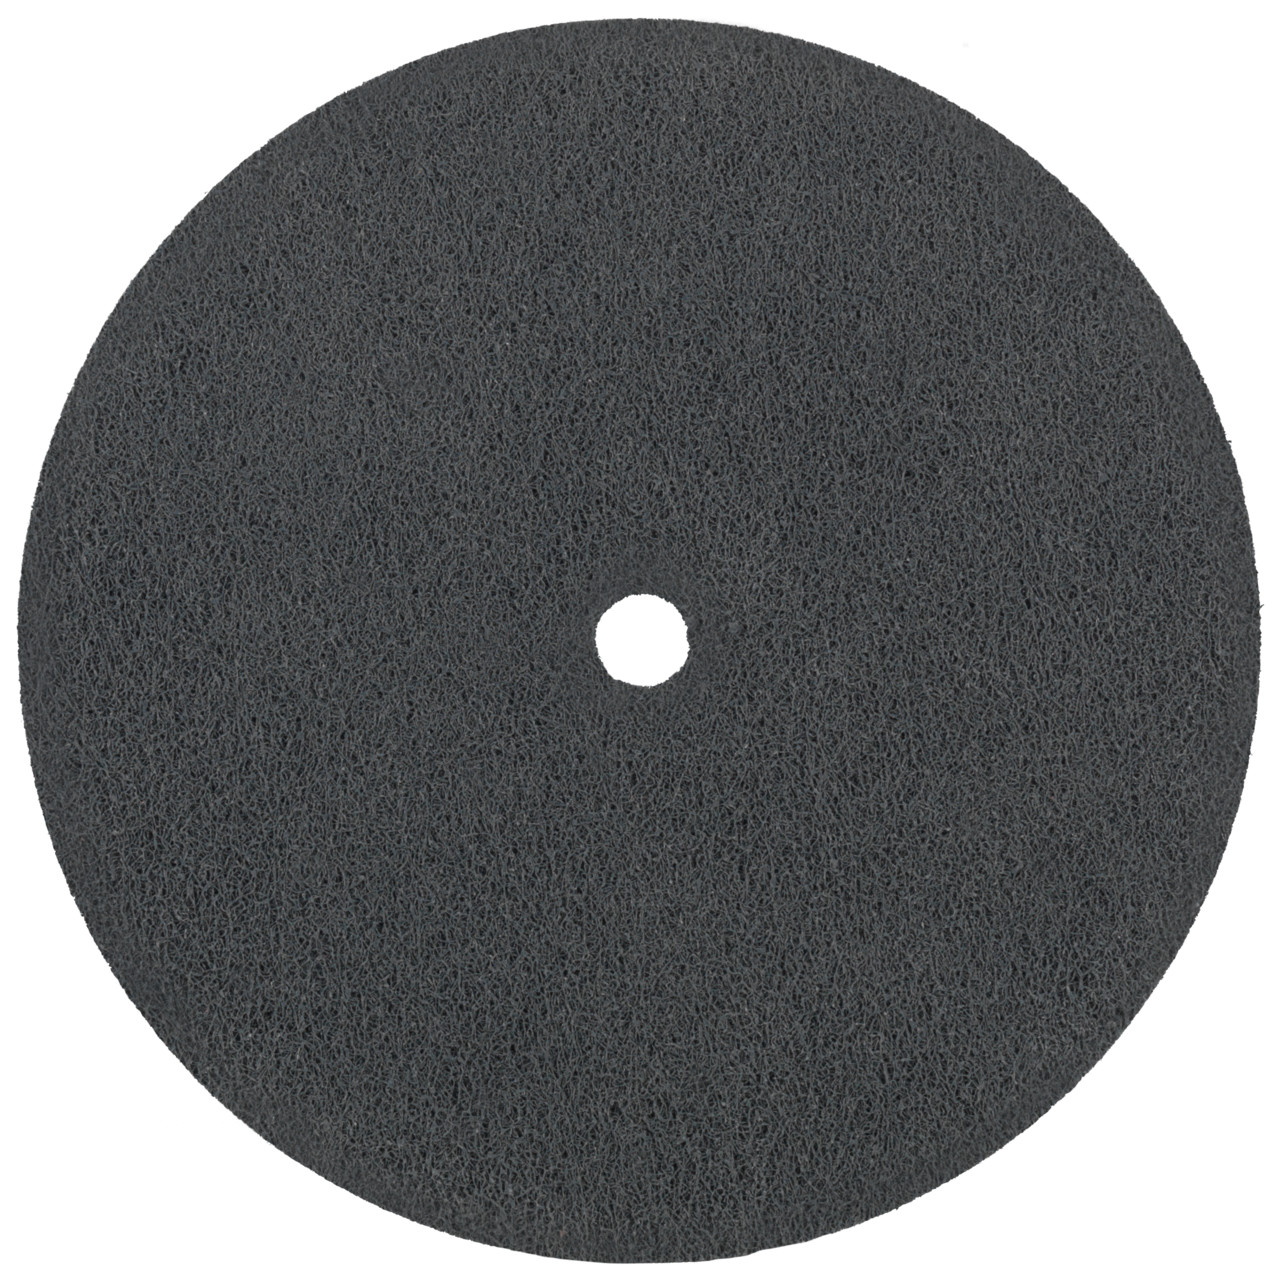 Tyrolit Discos compactos prensados DxDxH 152x6x12,7 Inserción universal, 3 C FEIN, forma: 1, Art. 34190236